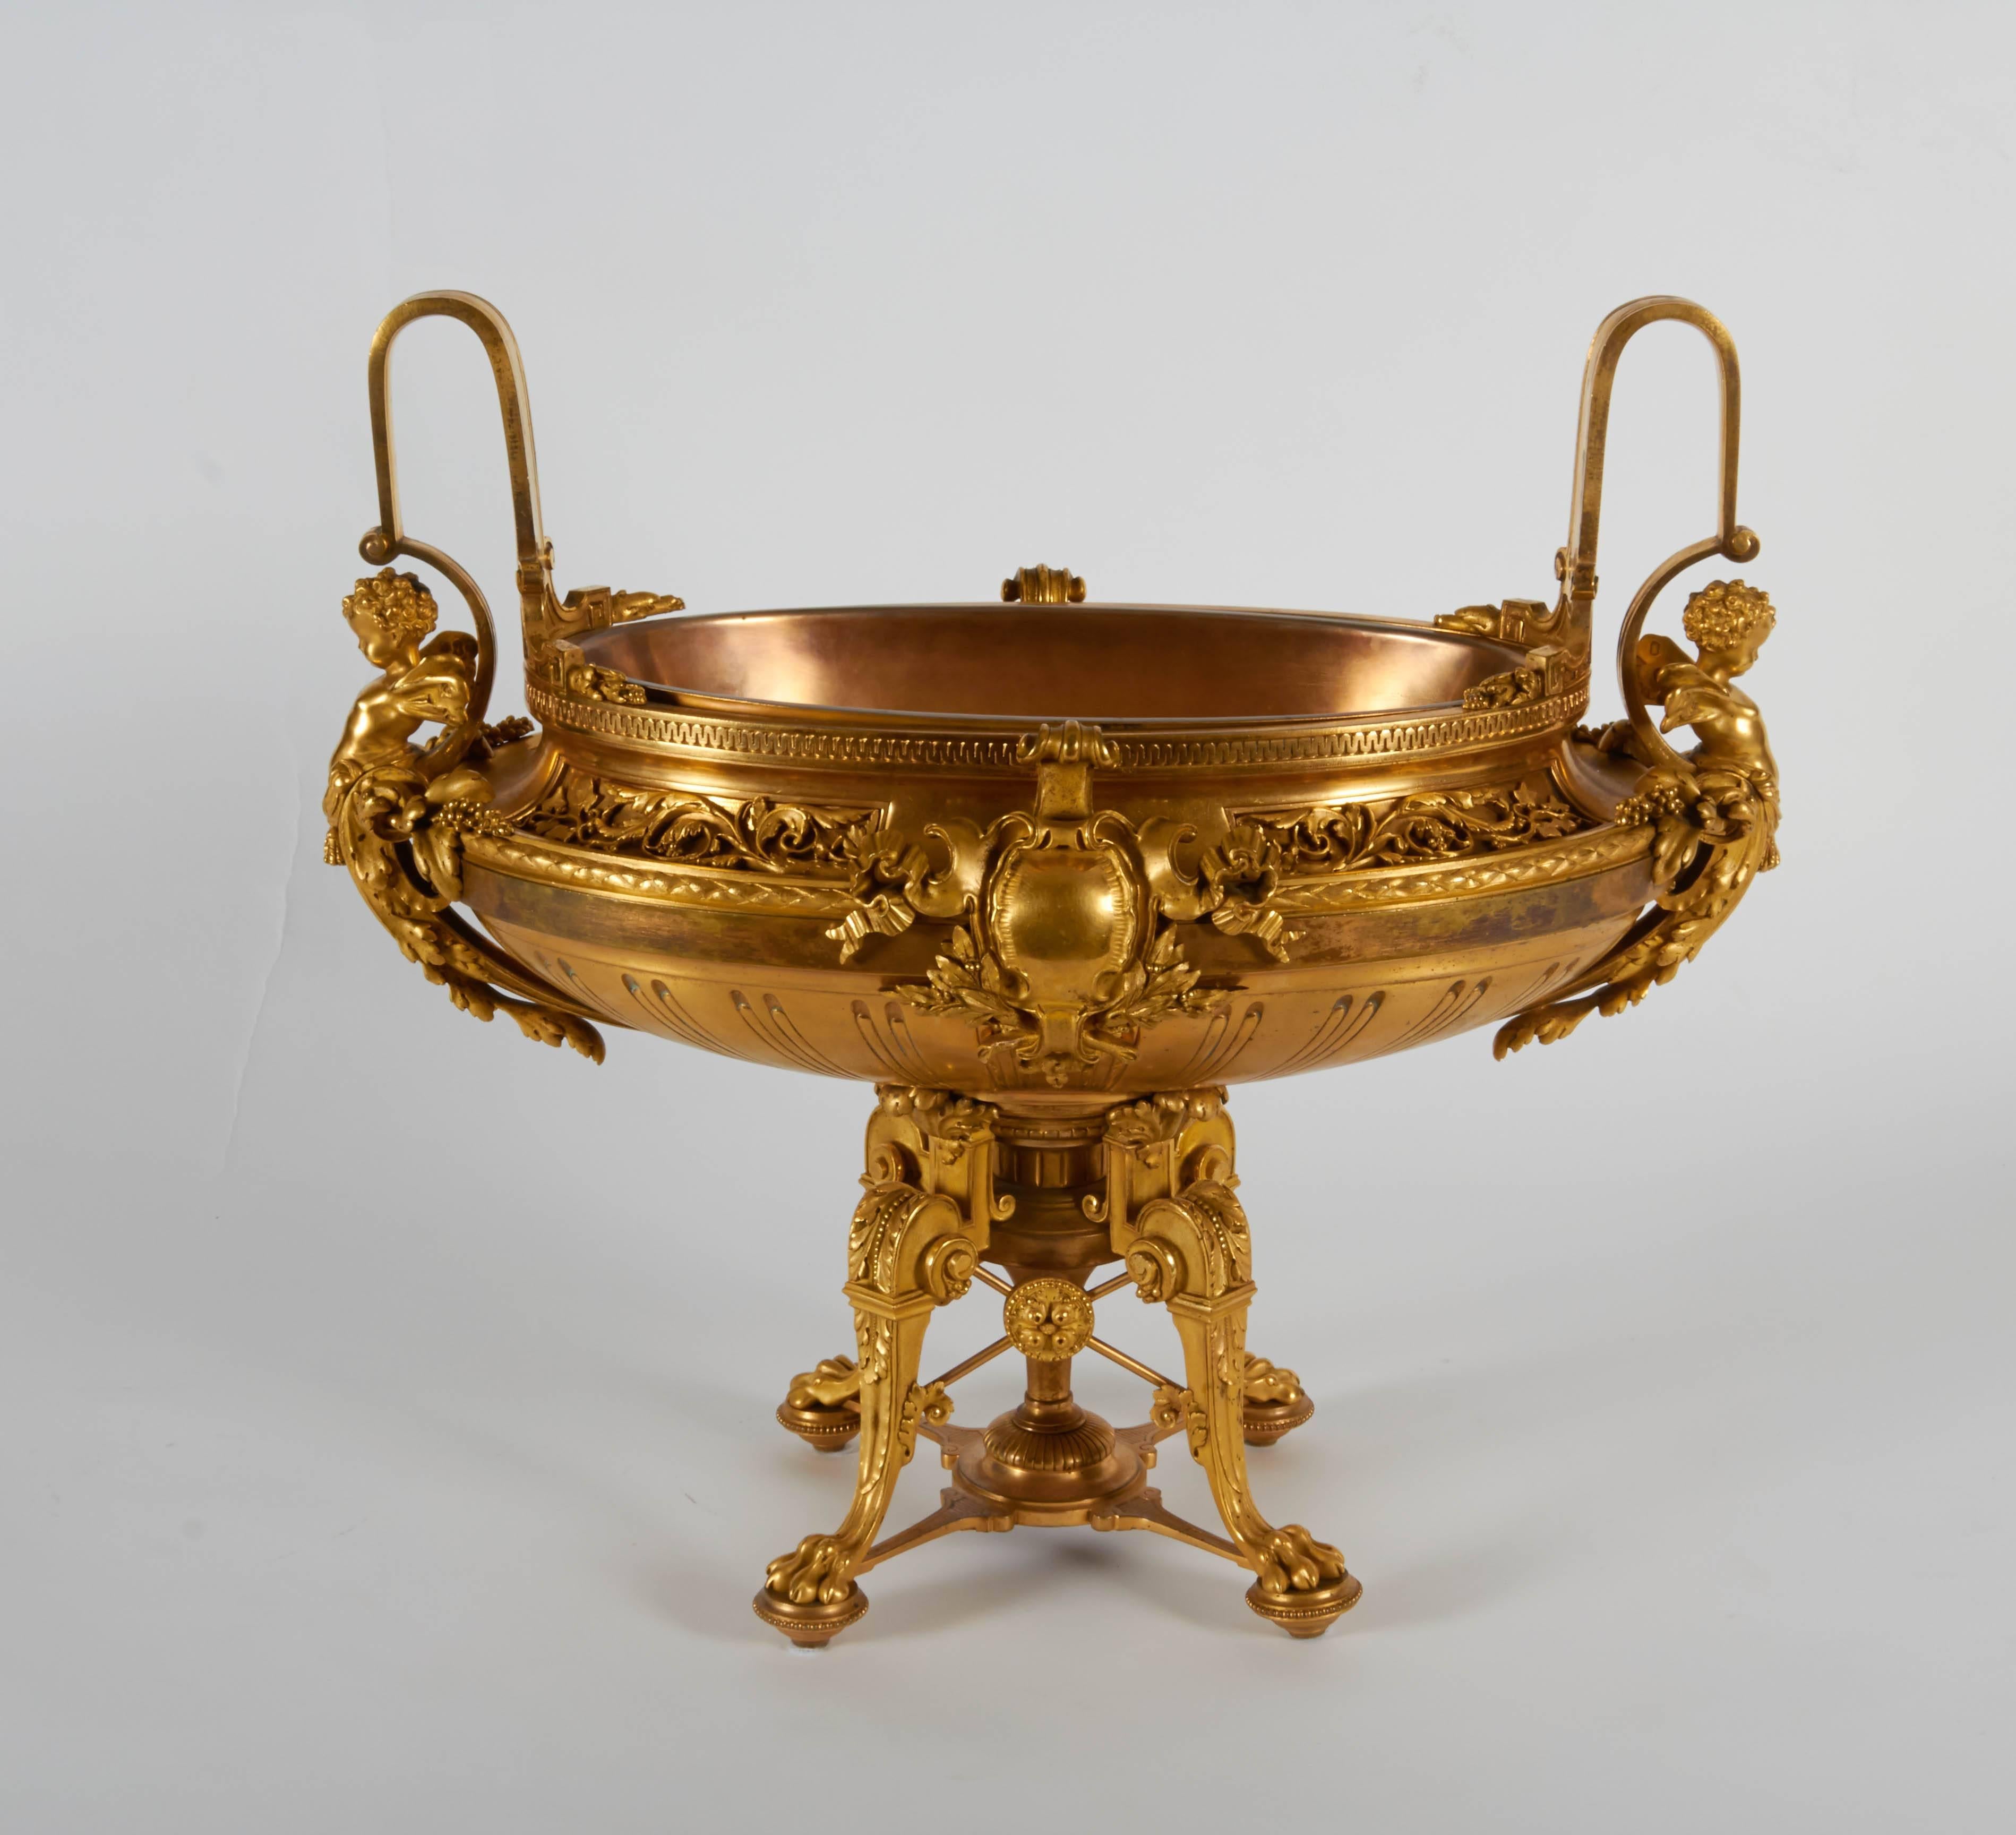 Une exceptionnelle qualité de centre de table ou de garniture de candélabre en bronze doré de style Louis XVI. Chaque pièce est sculptée et finement ciselée à la main avec des putti ailés, des couronnes et des guirlandes de fleurs. Chaque pièce est